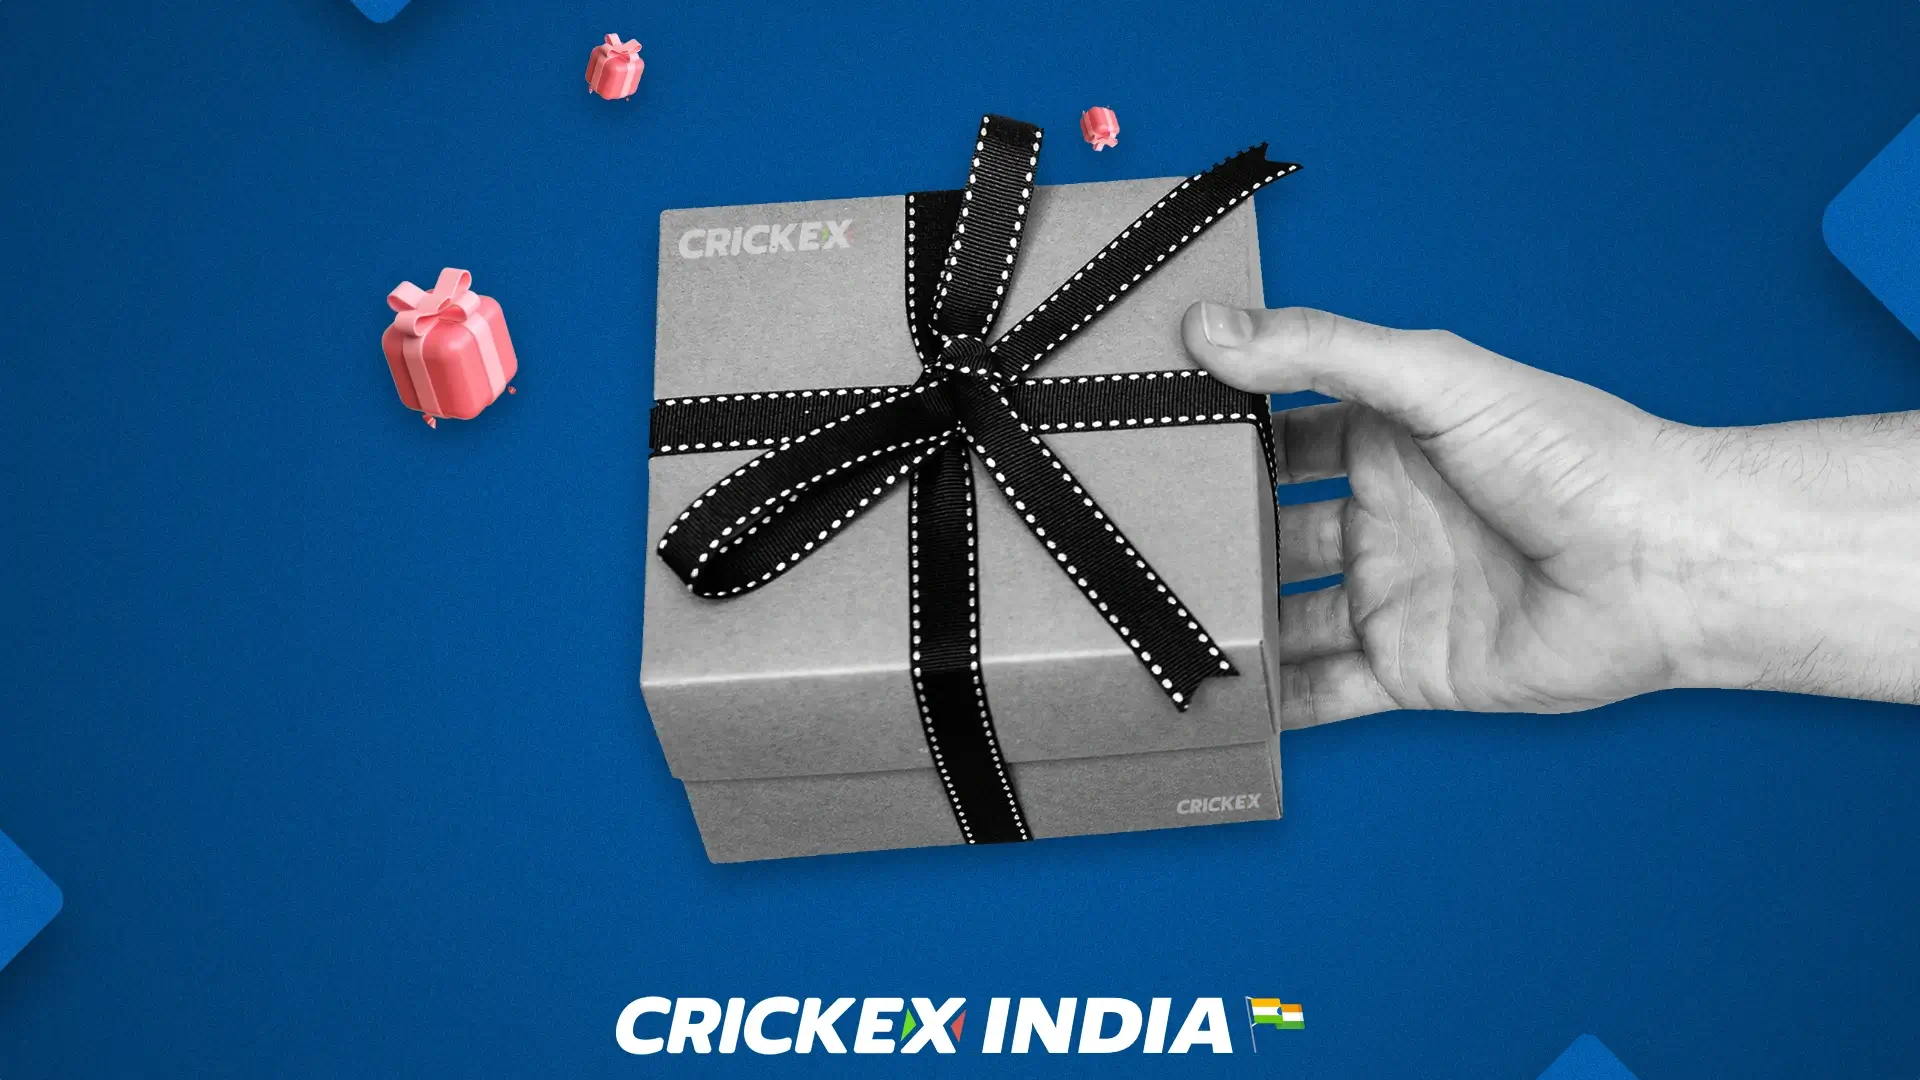 भारत के नए खिलाड़ियों के लिए Crickex स्वागत बोनस